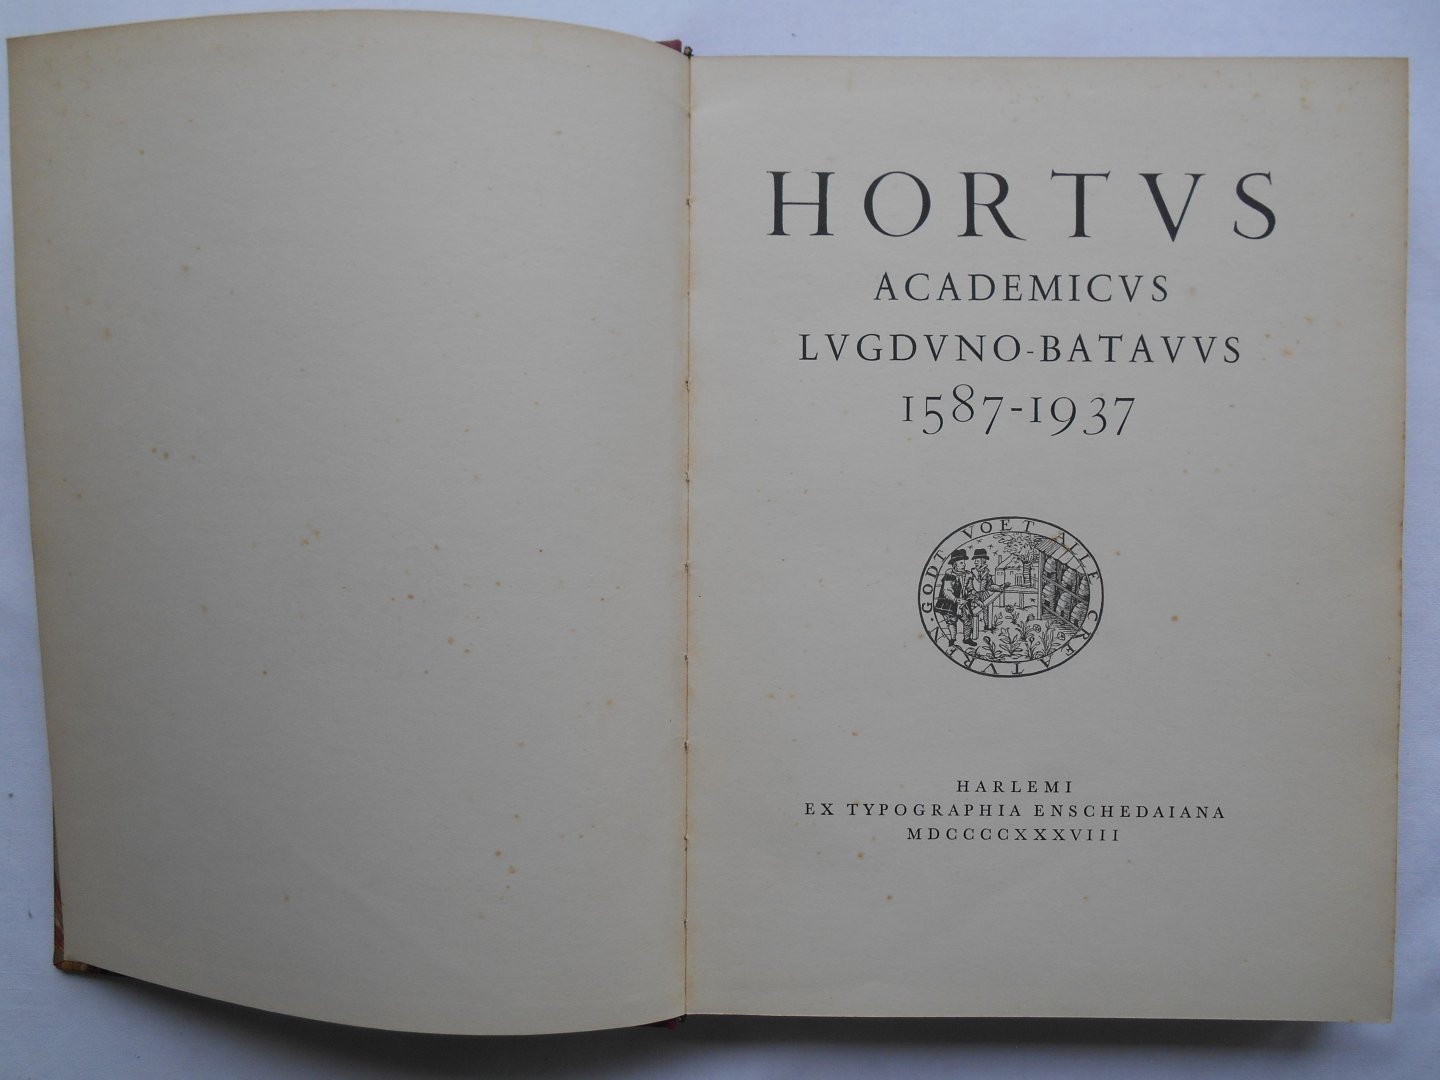 Veendorp, H. & L.G.M. Baas Becking - Hortus Academicus Lugduno Batavus 1587 - 1937 (Leiden)